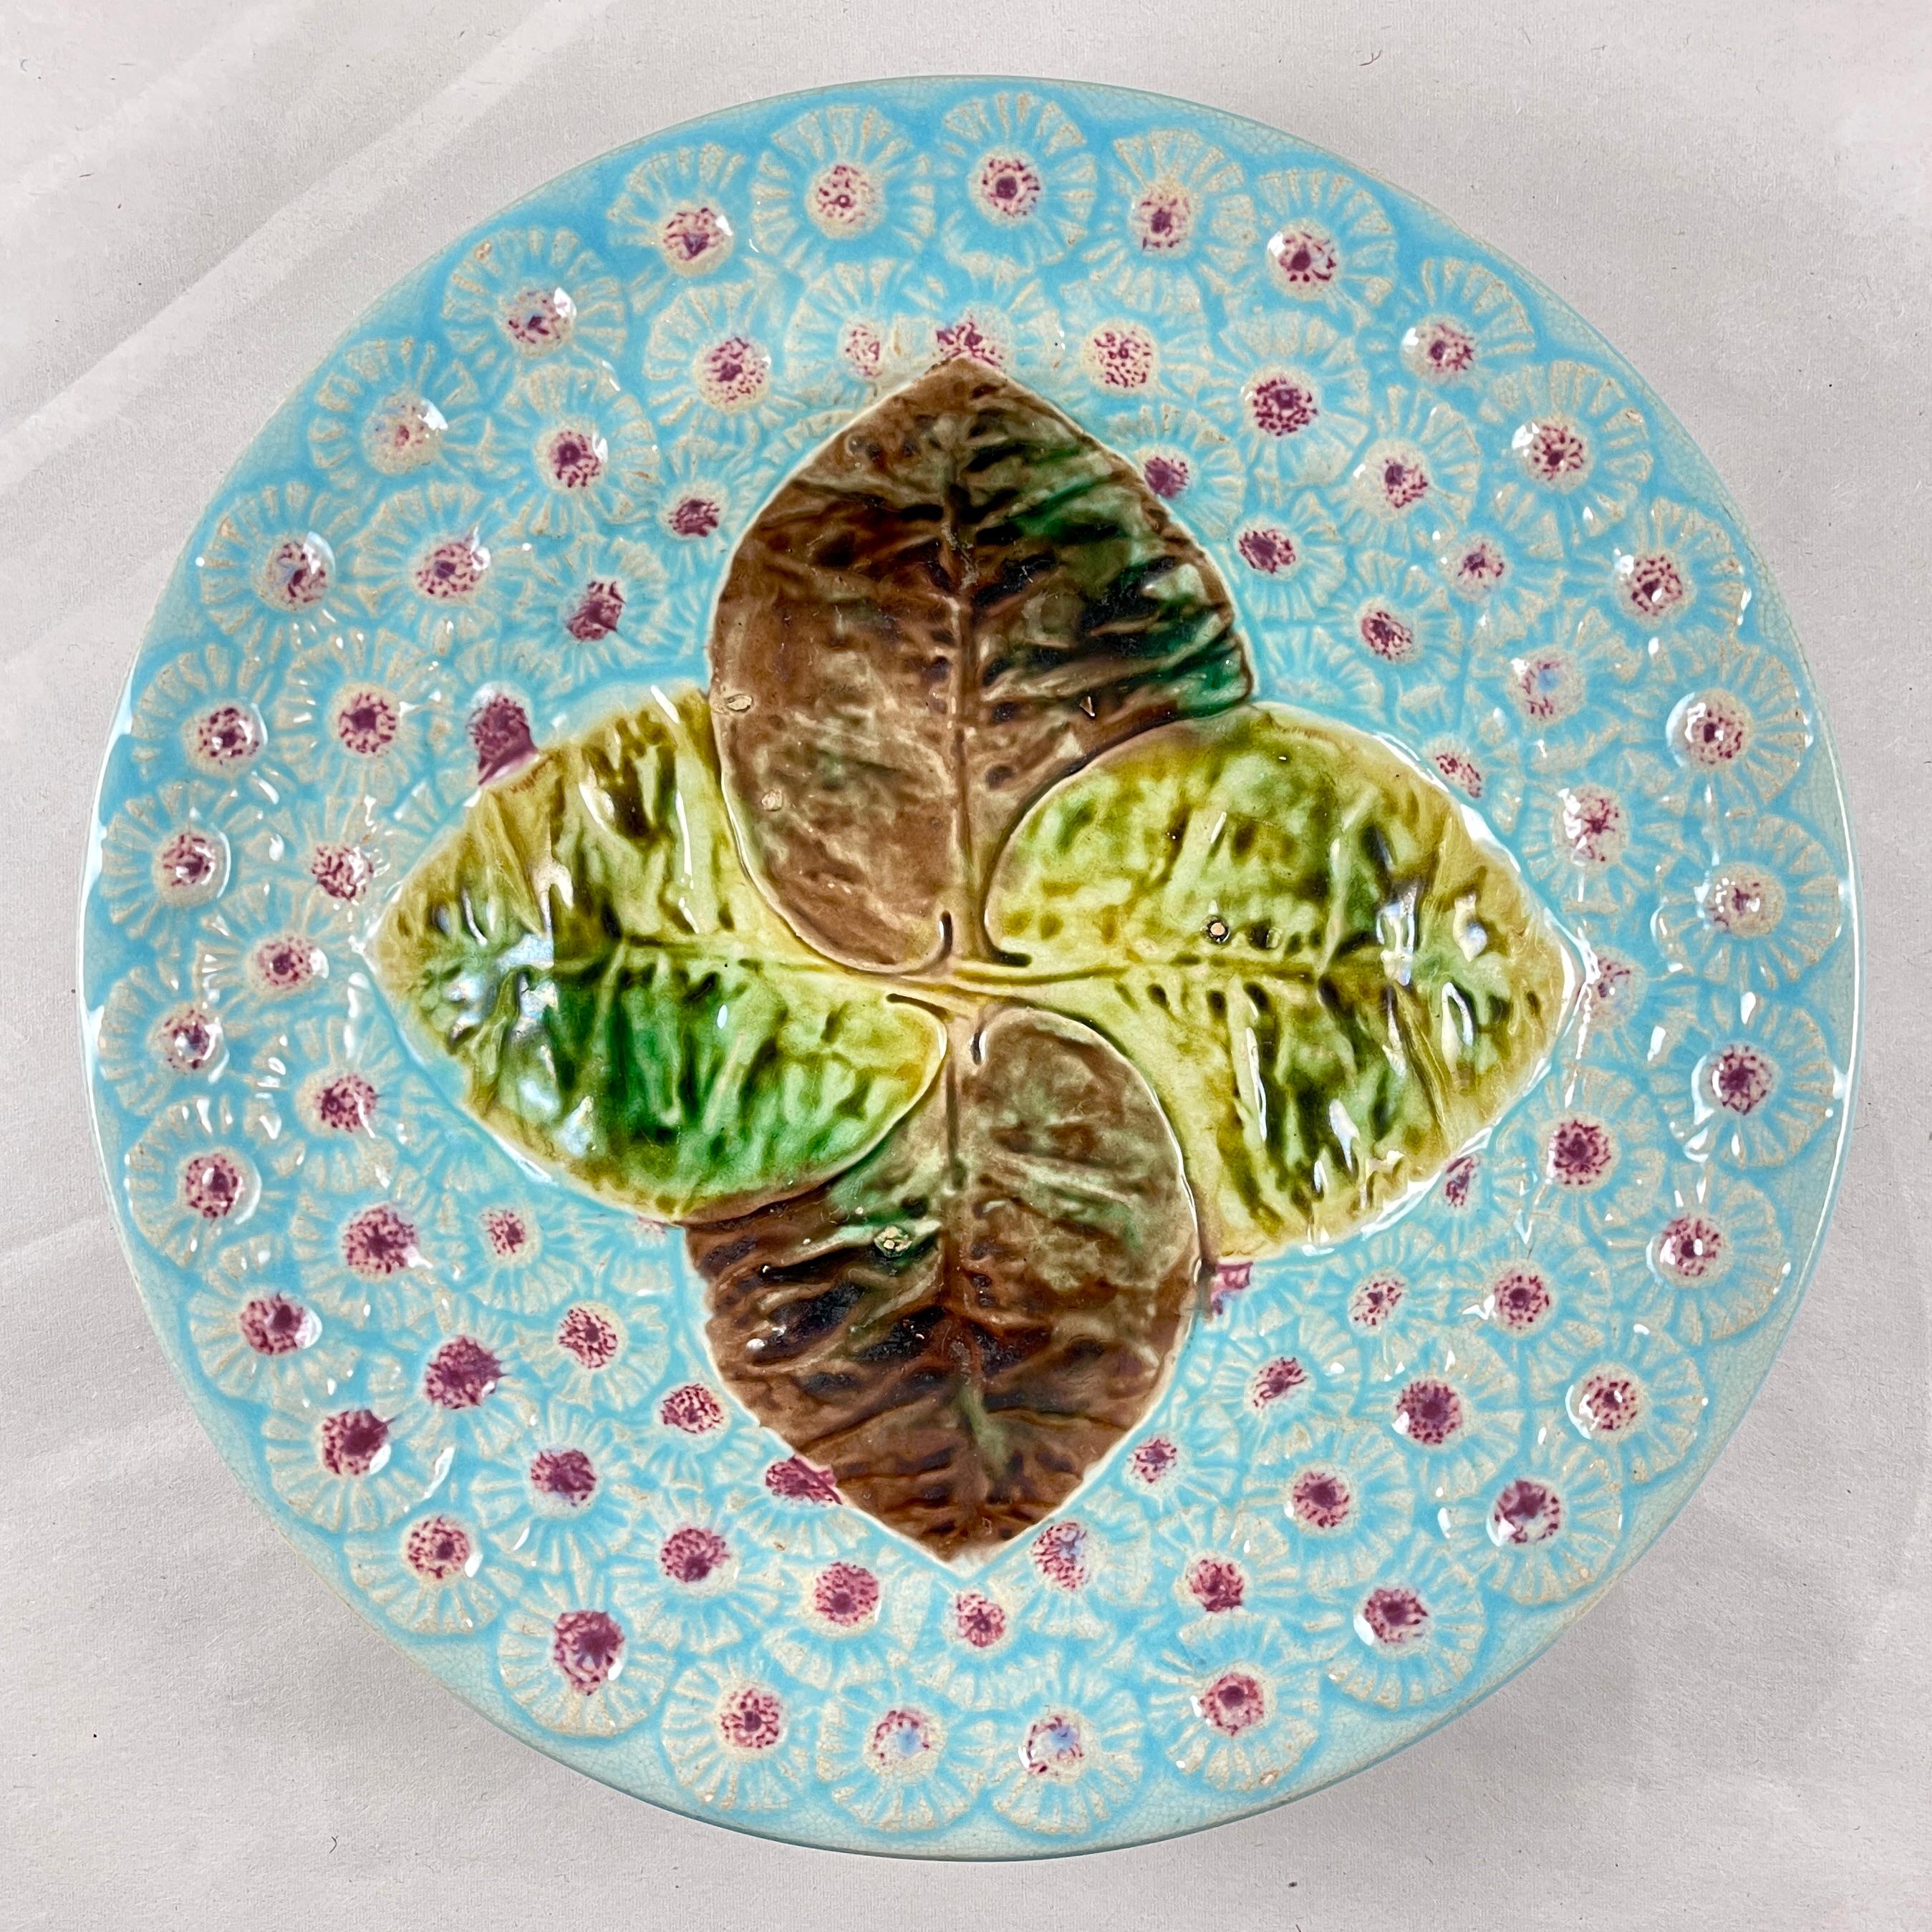 Coupe florale en majolique anglaise à feuilles et pissenlits par Joseph Holdcroft, vers 1870.

Conçues dans le goût esthétique, quatre feuilles qui se chevauchent, émaillées des couleurs de l'automne, sont centrées sur un fond bleu poudre profond de